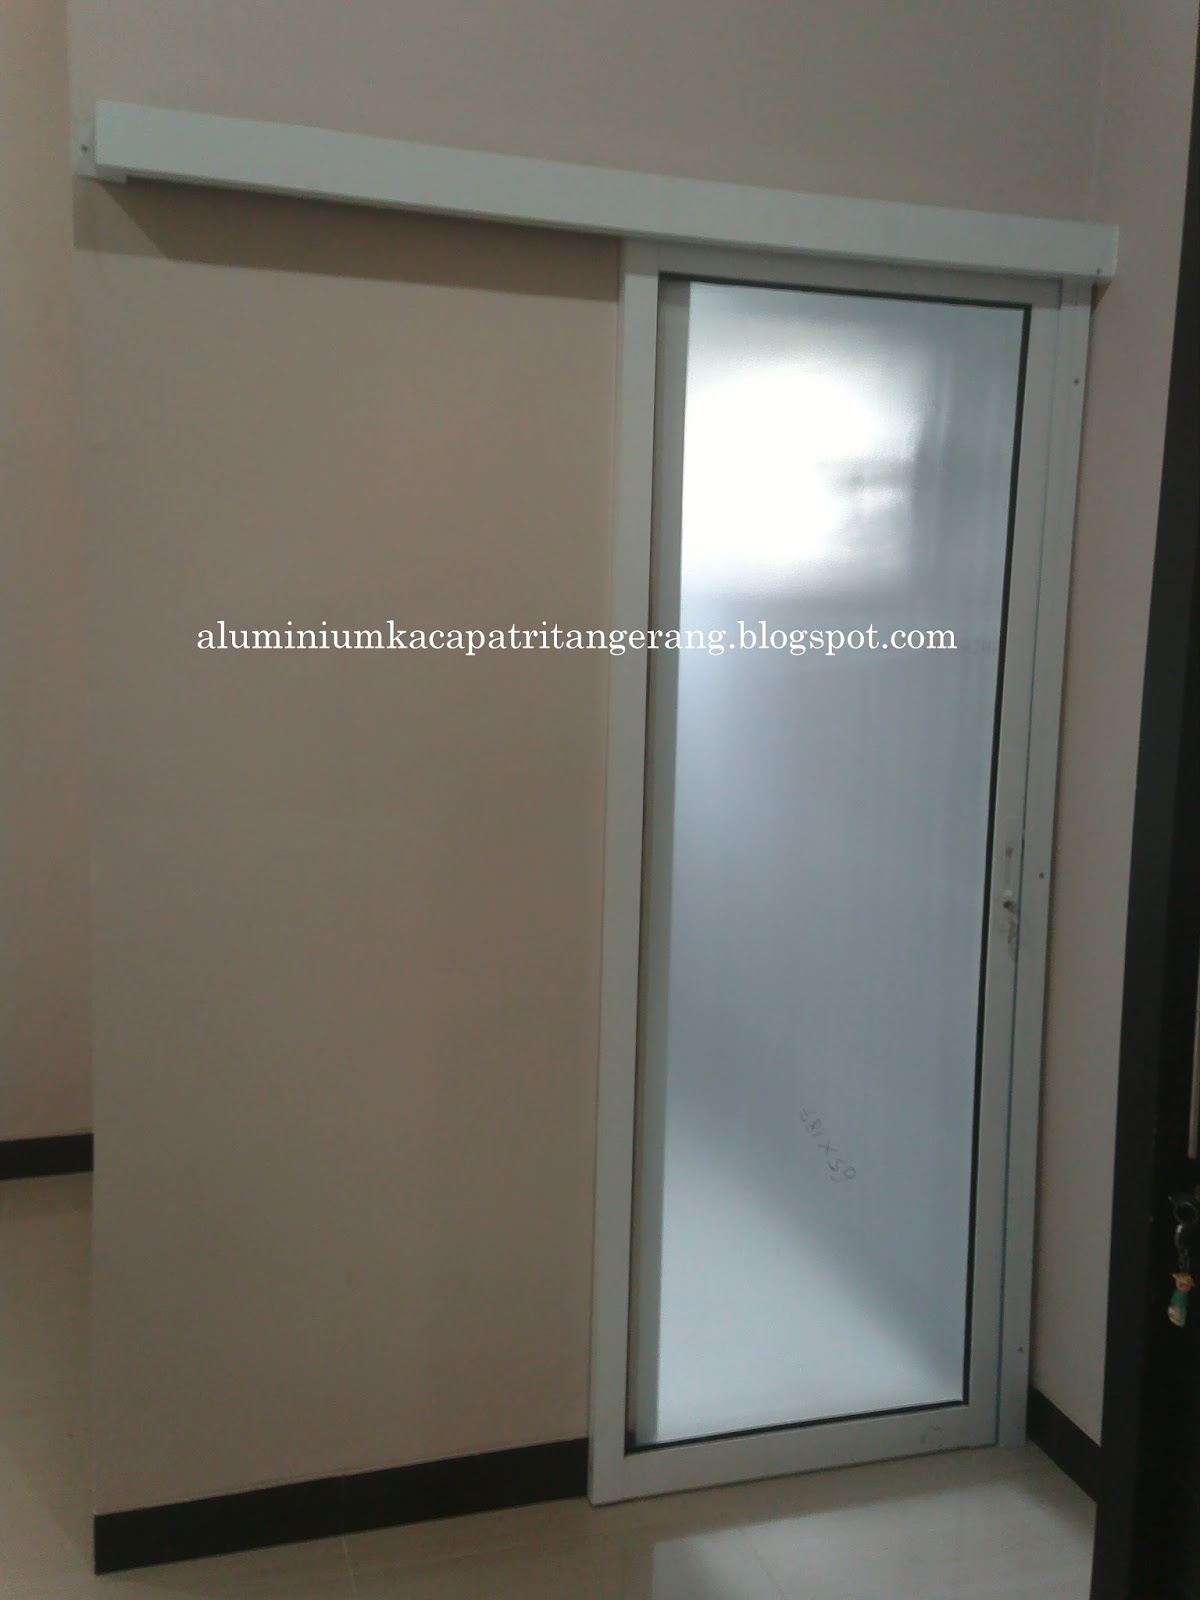  pintu sliding aluminium 05 murah tangerang jakarta toko 